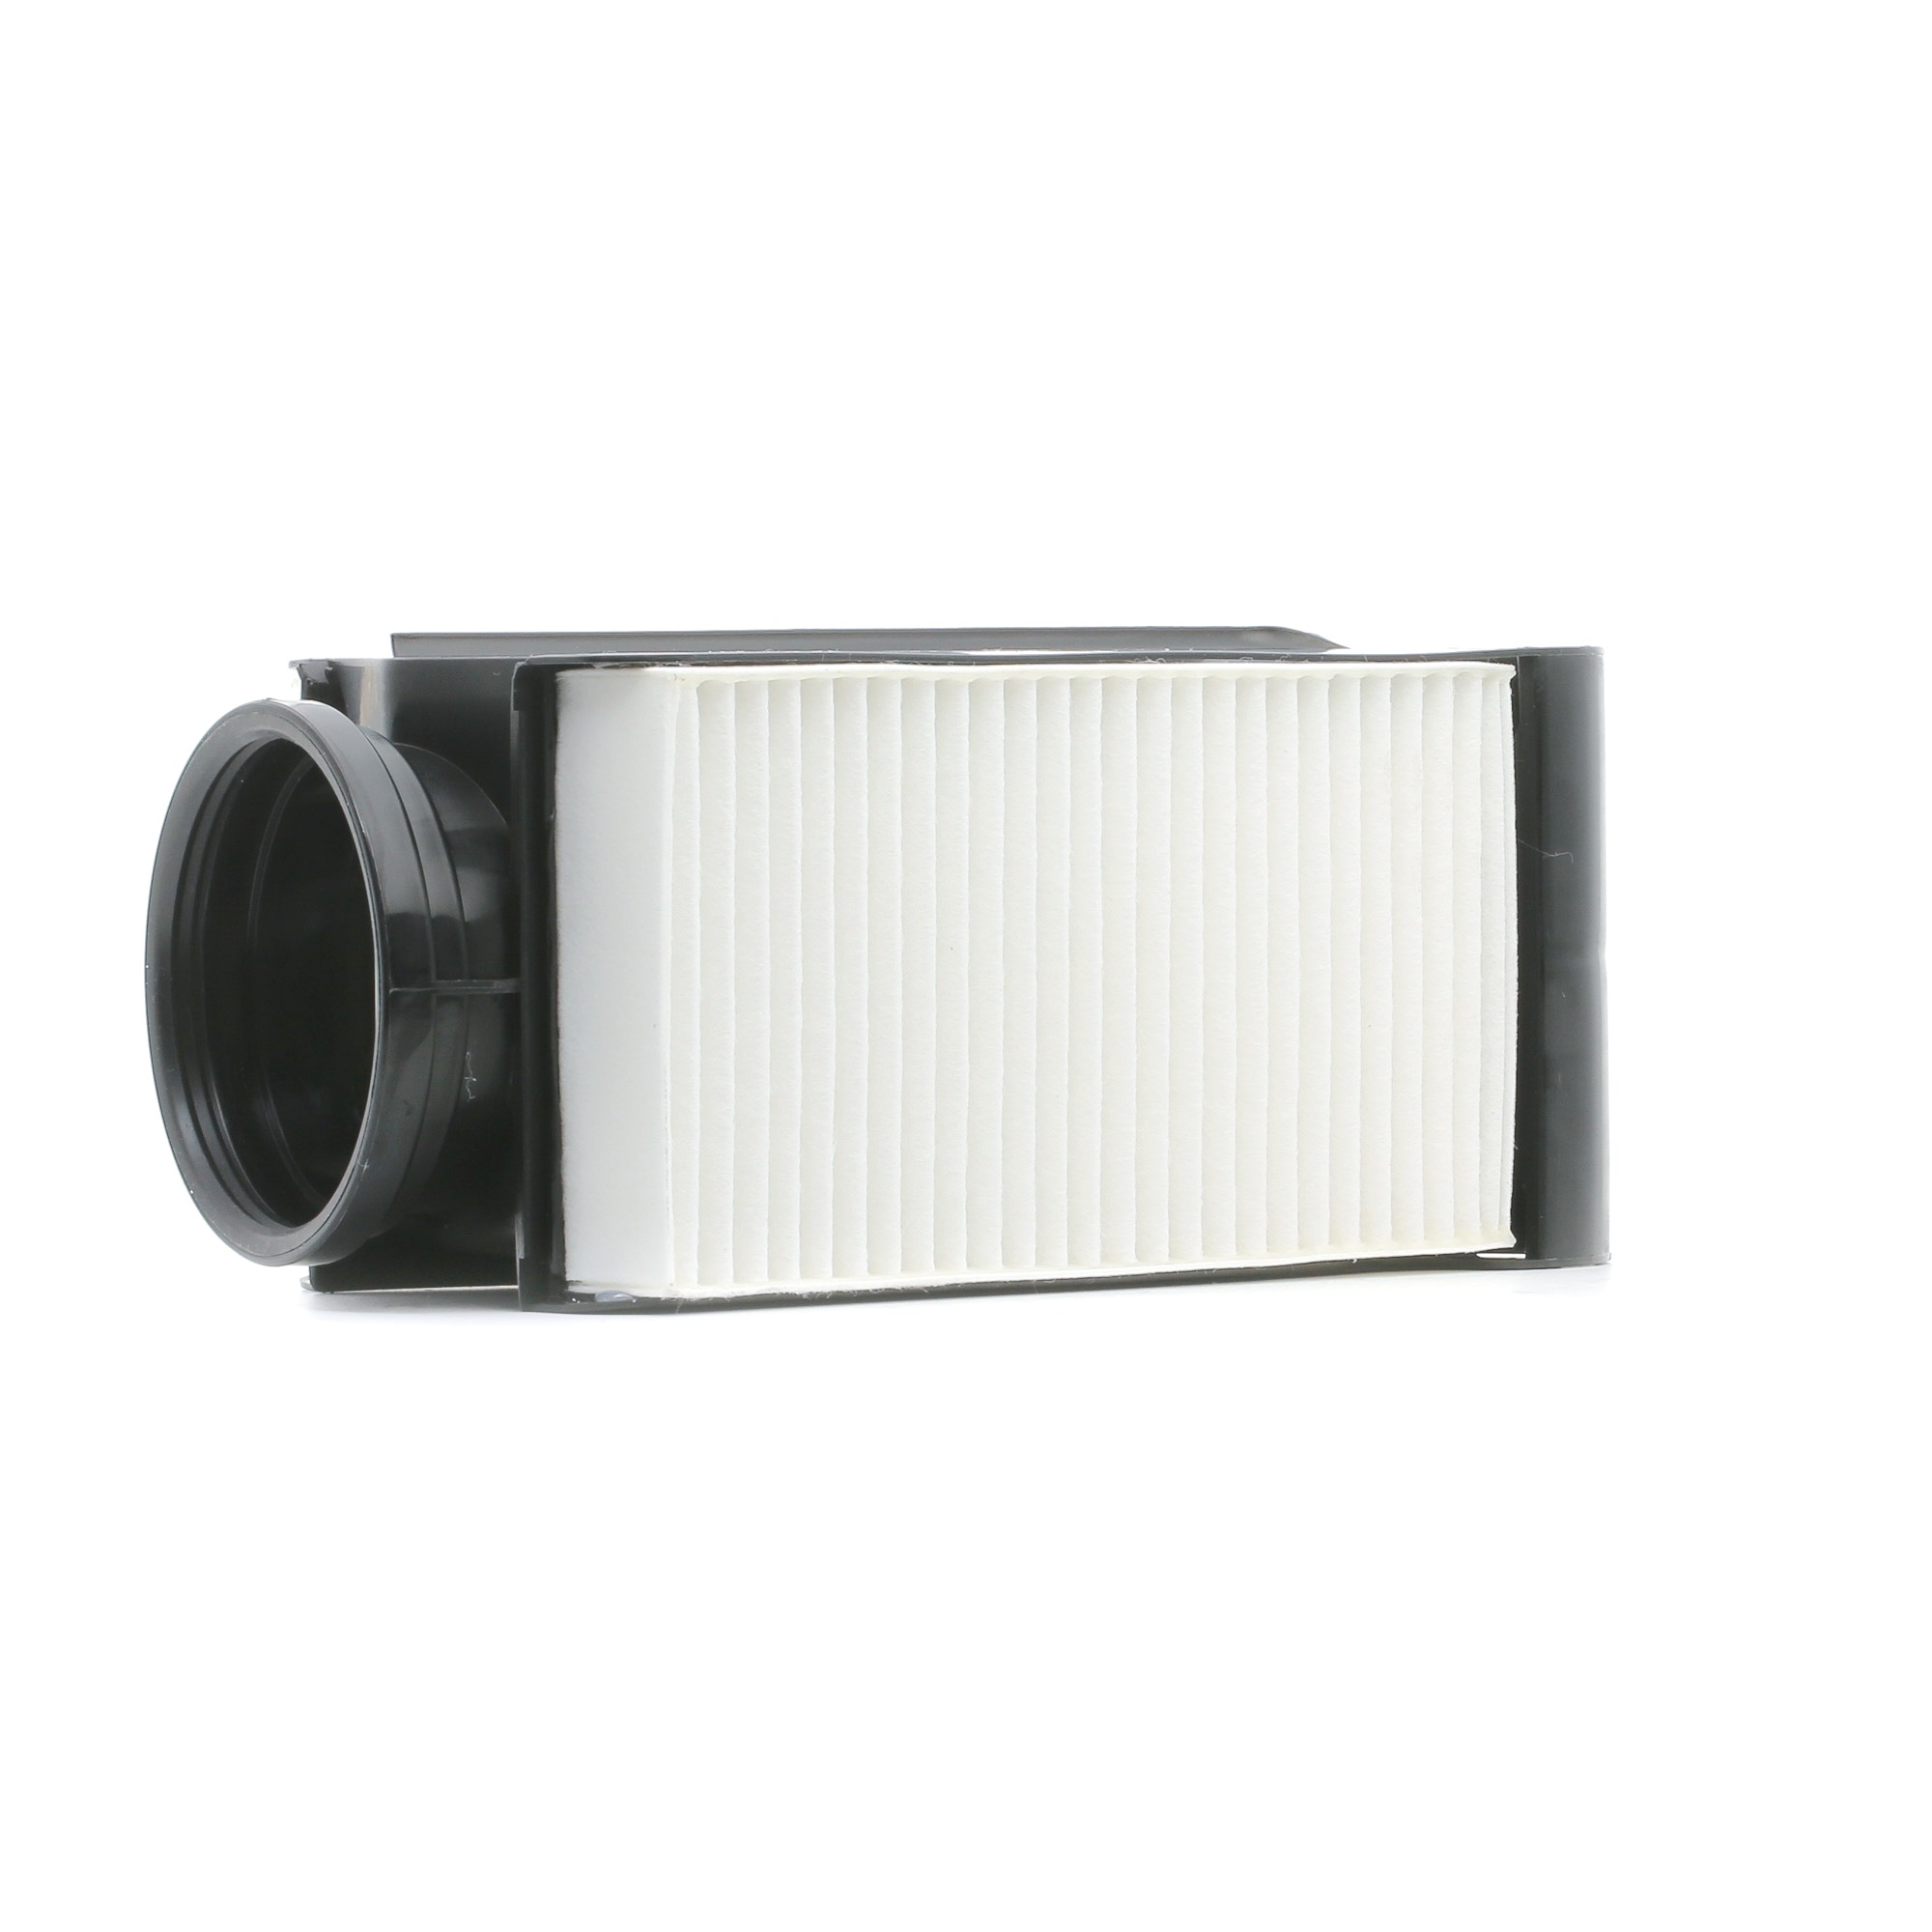 STARK 114mm, 134,0mm, 260mm, Filter Insert Length: 260mm, Width: 134,0mm, Height: 114mm Engine air filter SKAF-0060770 buy